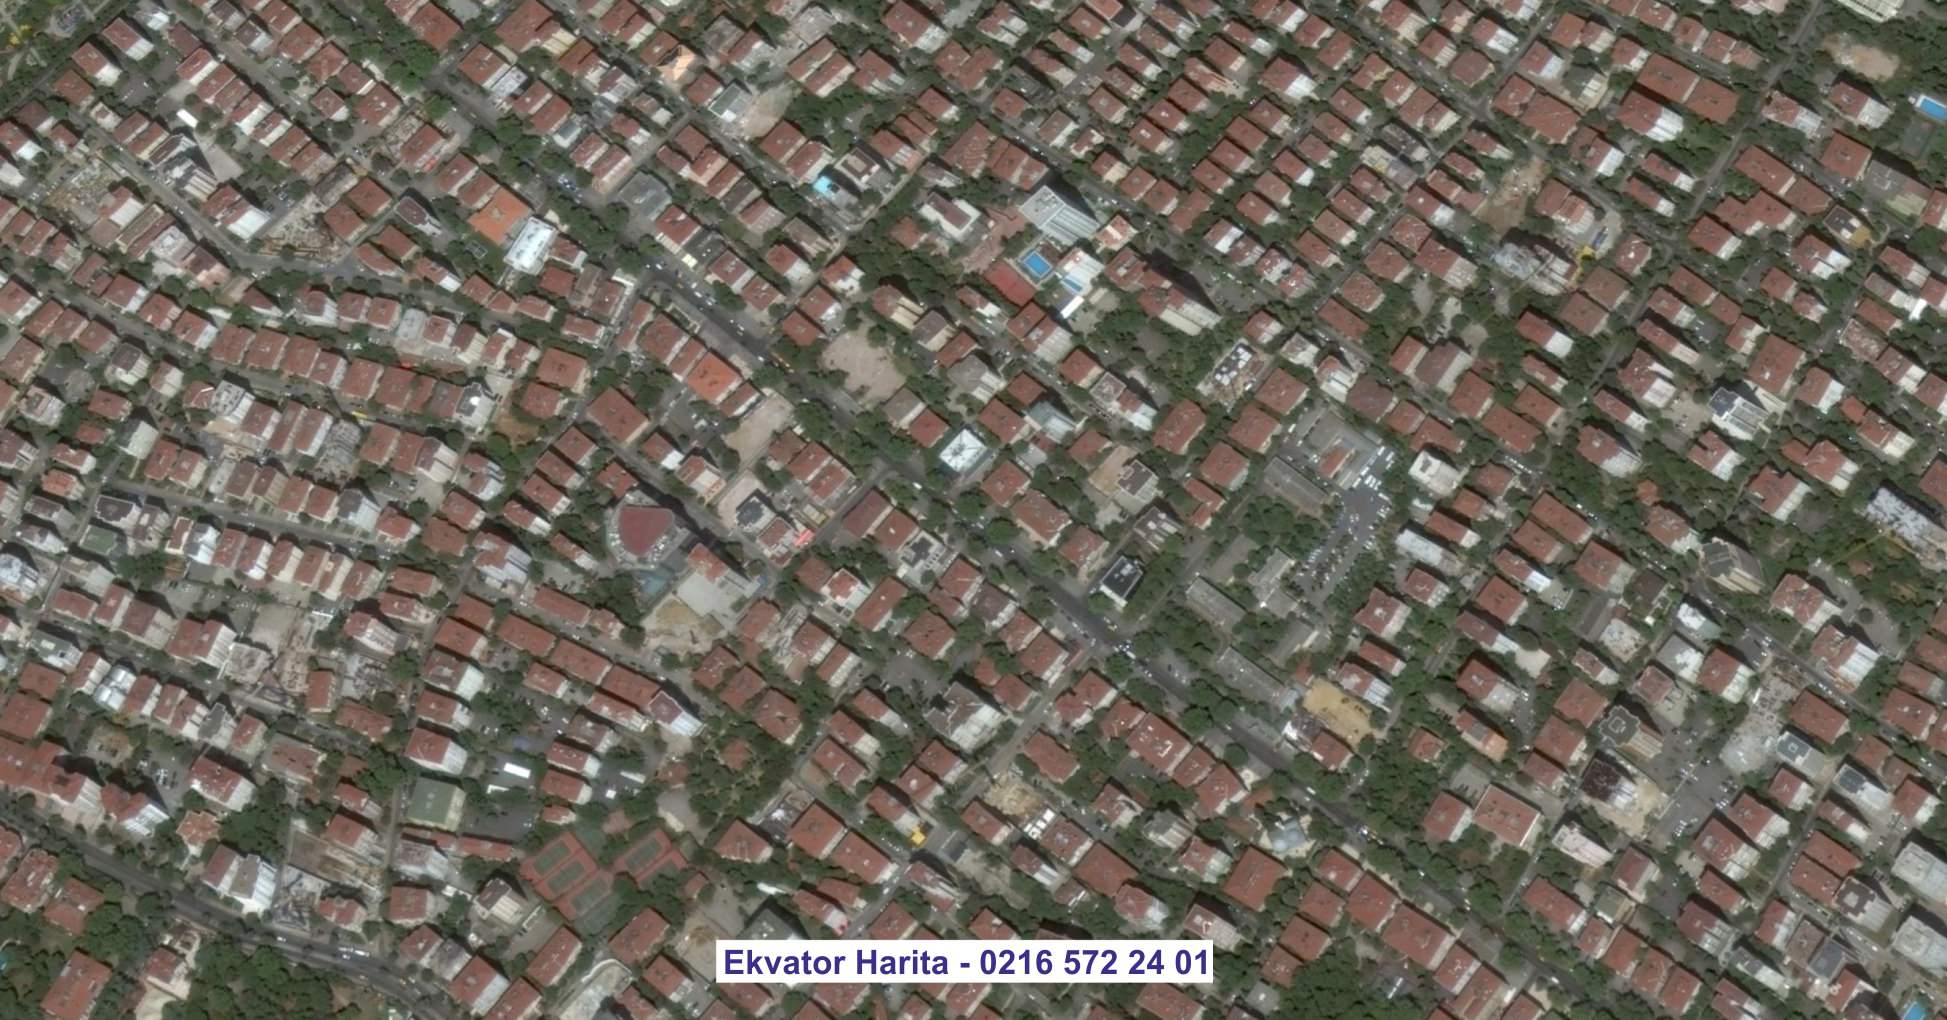 Maltepe Uydu Görüntüsü Örnek Fotoğrafı